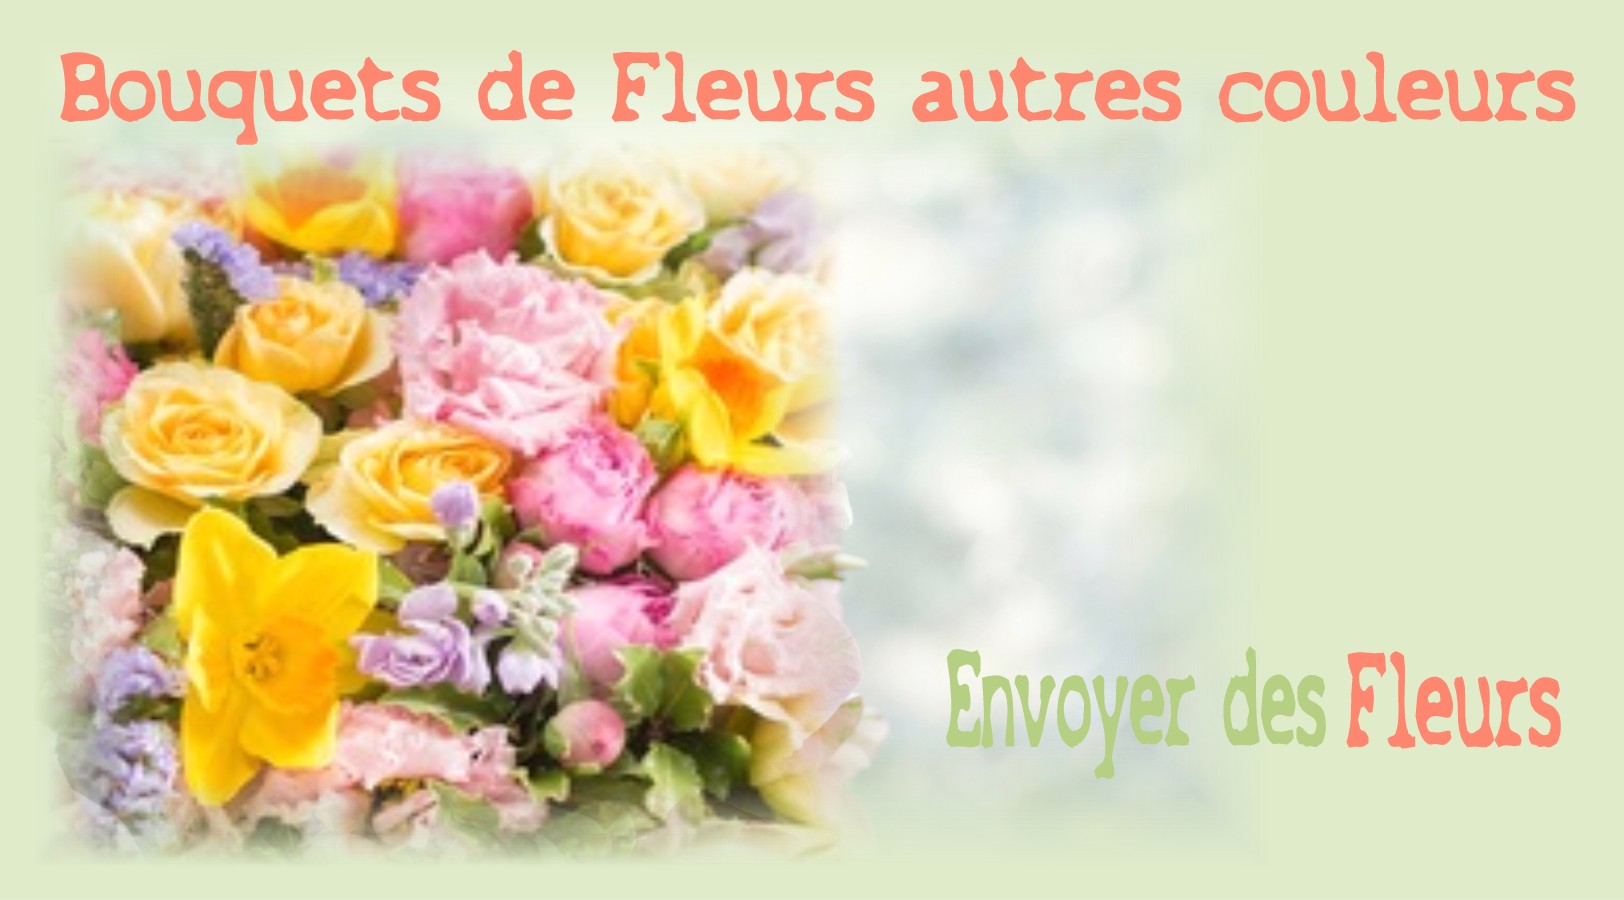 BOUQUETS DE FLEURS AUTRES COULEURS - FLEURISTE des ALPES MARITIMES - ENVOYER DES FLEURS